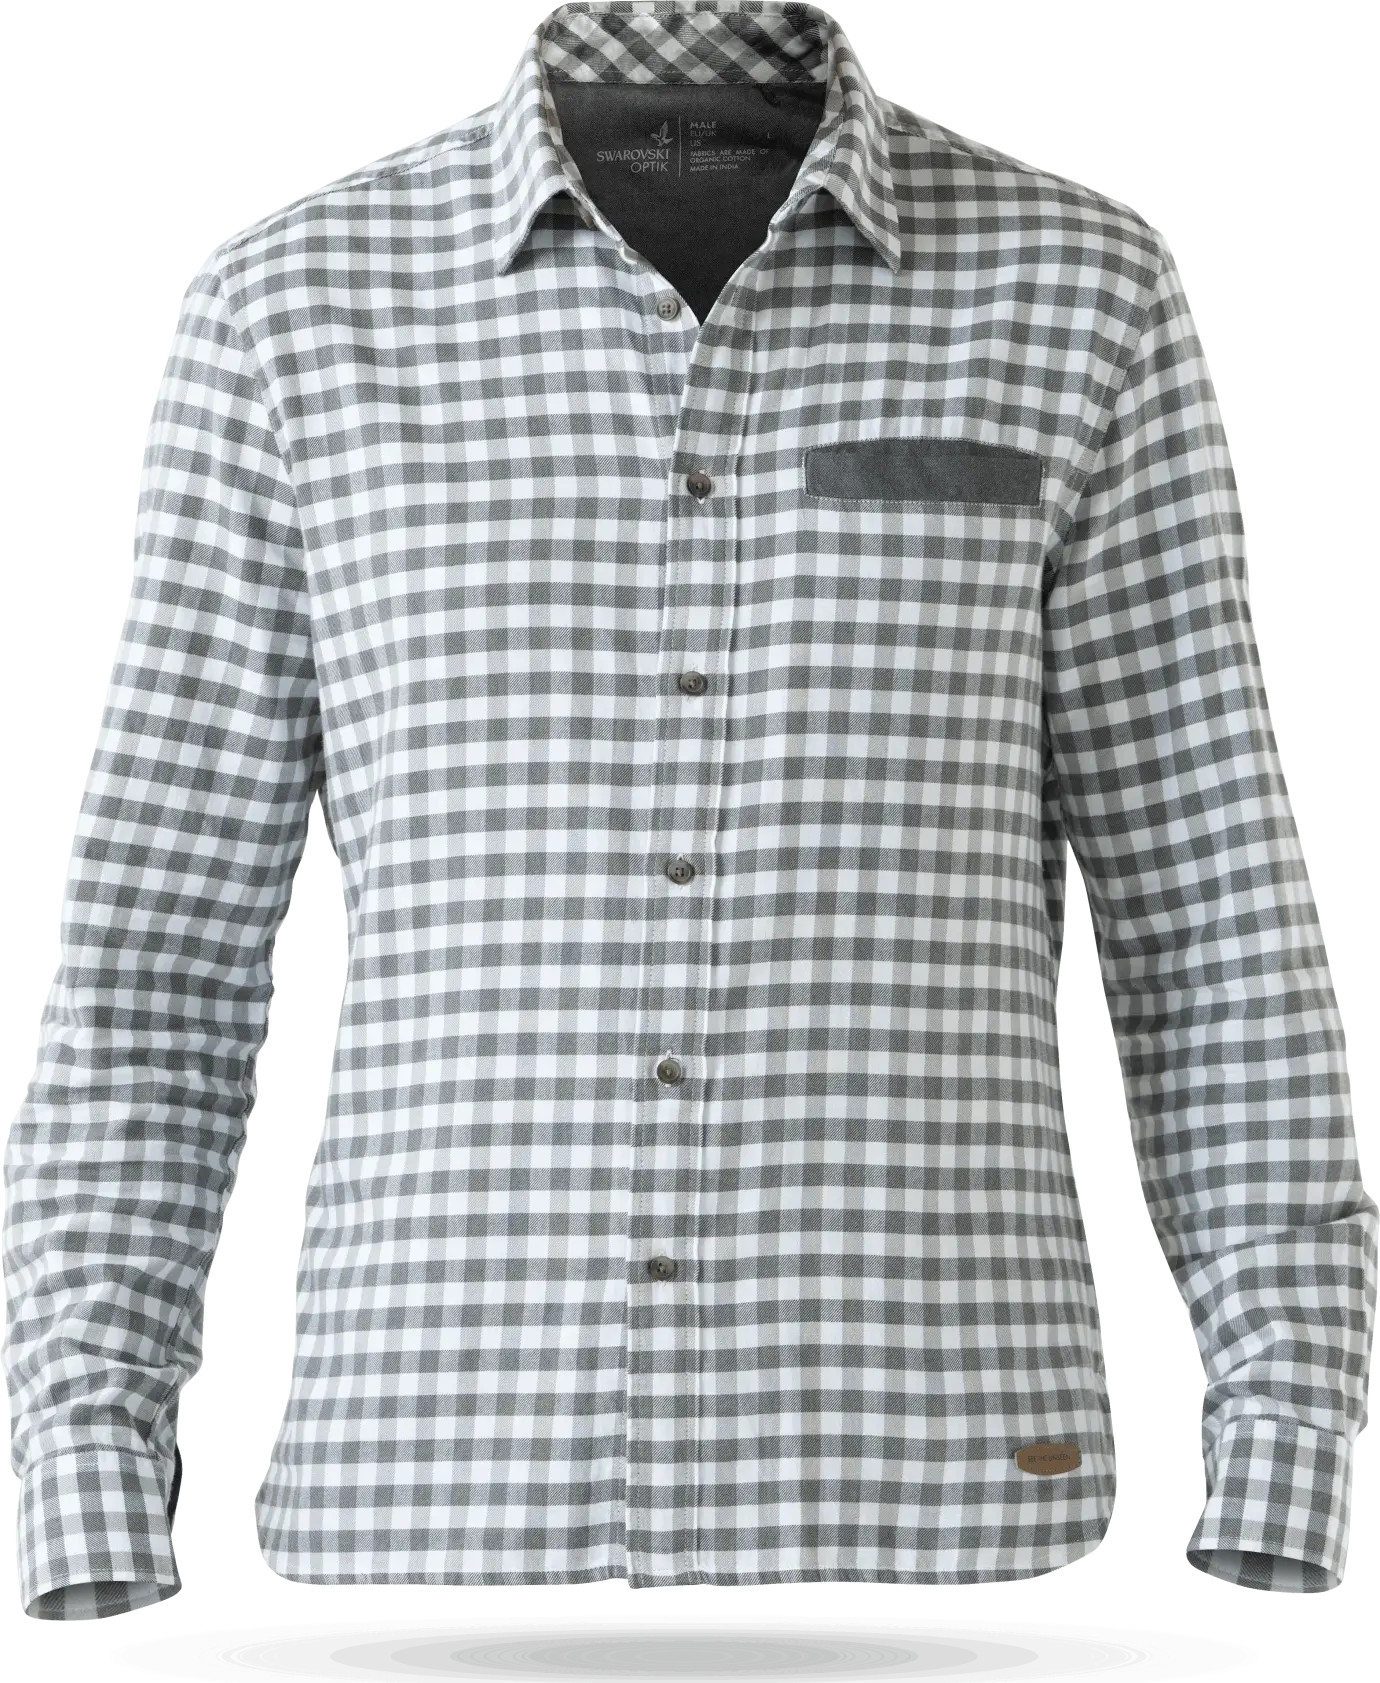 Swarovski Men's Ps Plaid Shirt Nocolour S, Nocolour